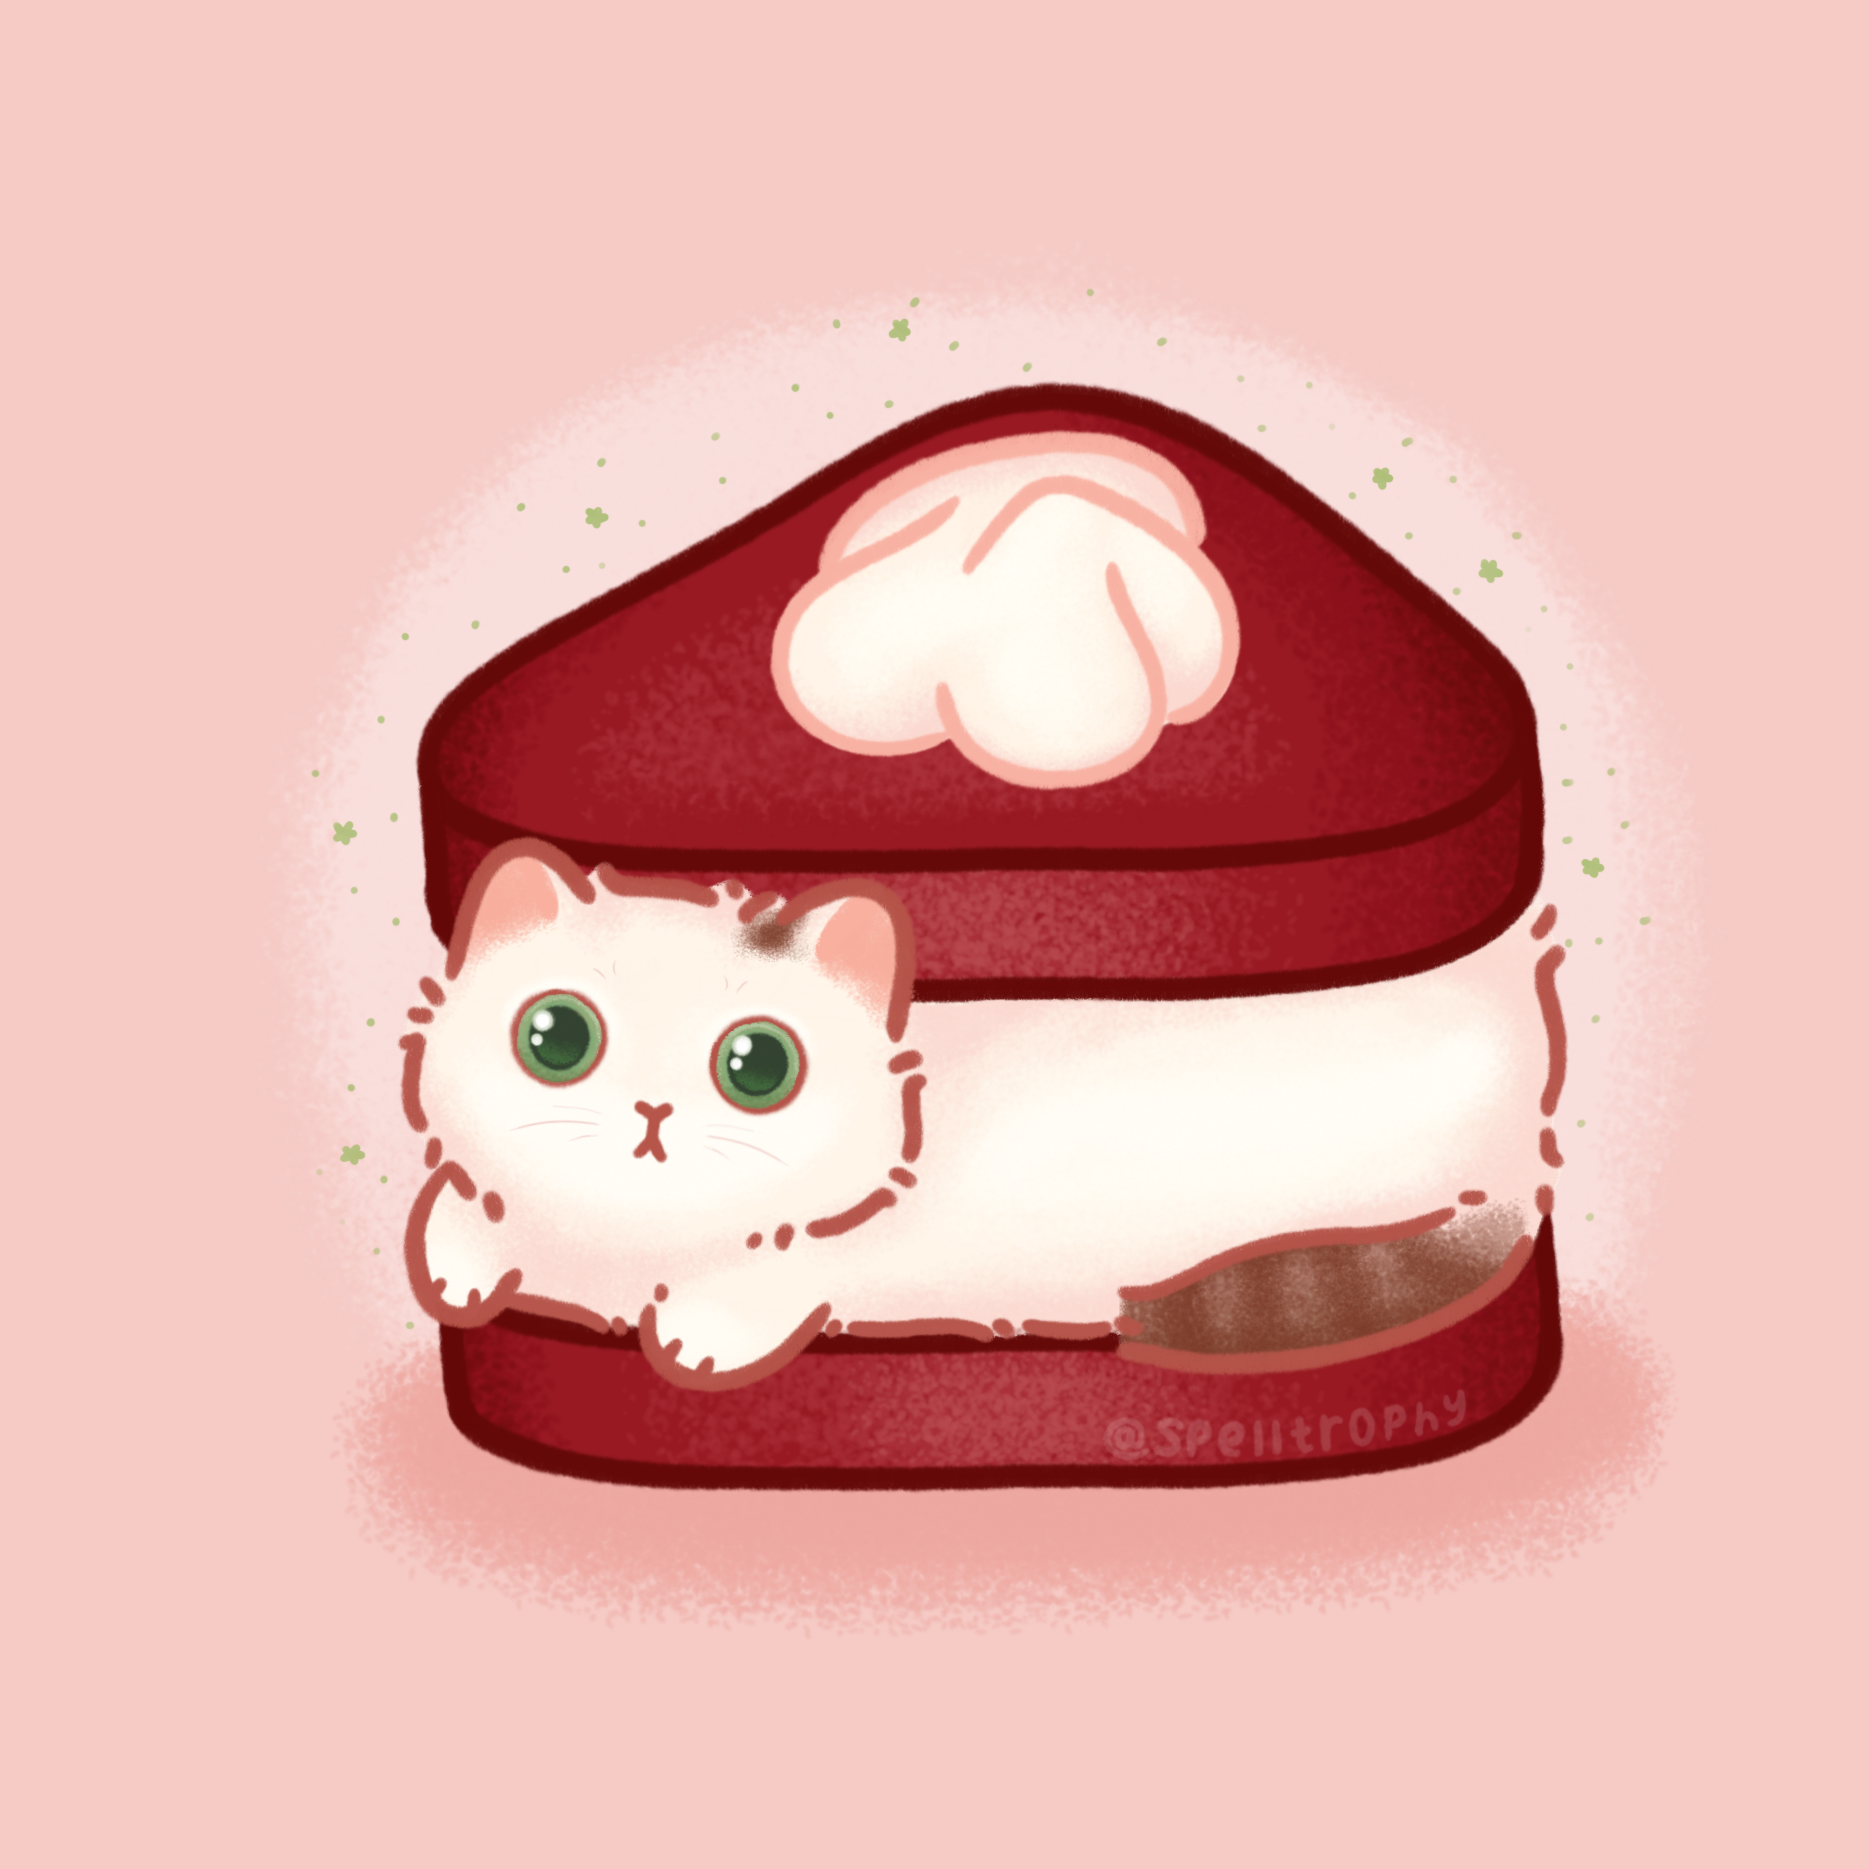 Red velvet cat cake by Spelltrophy on DeviantArt